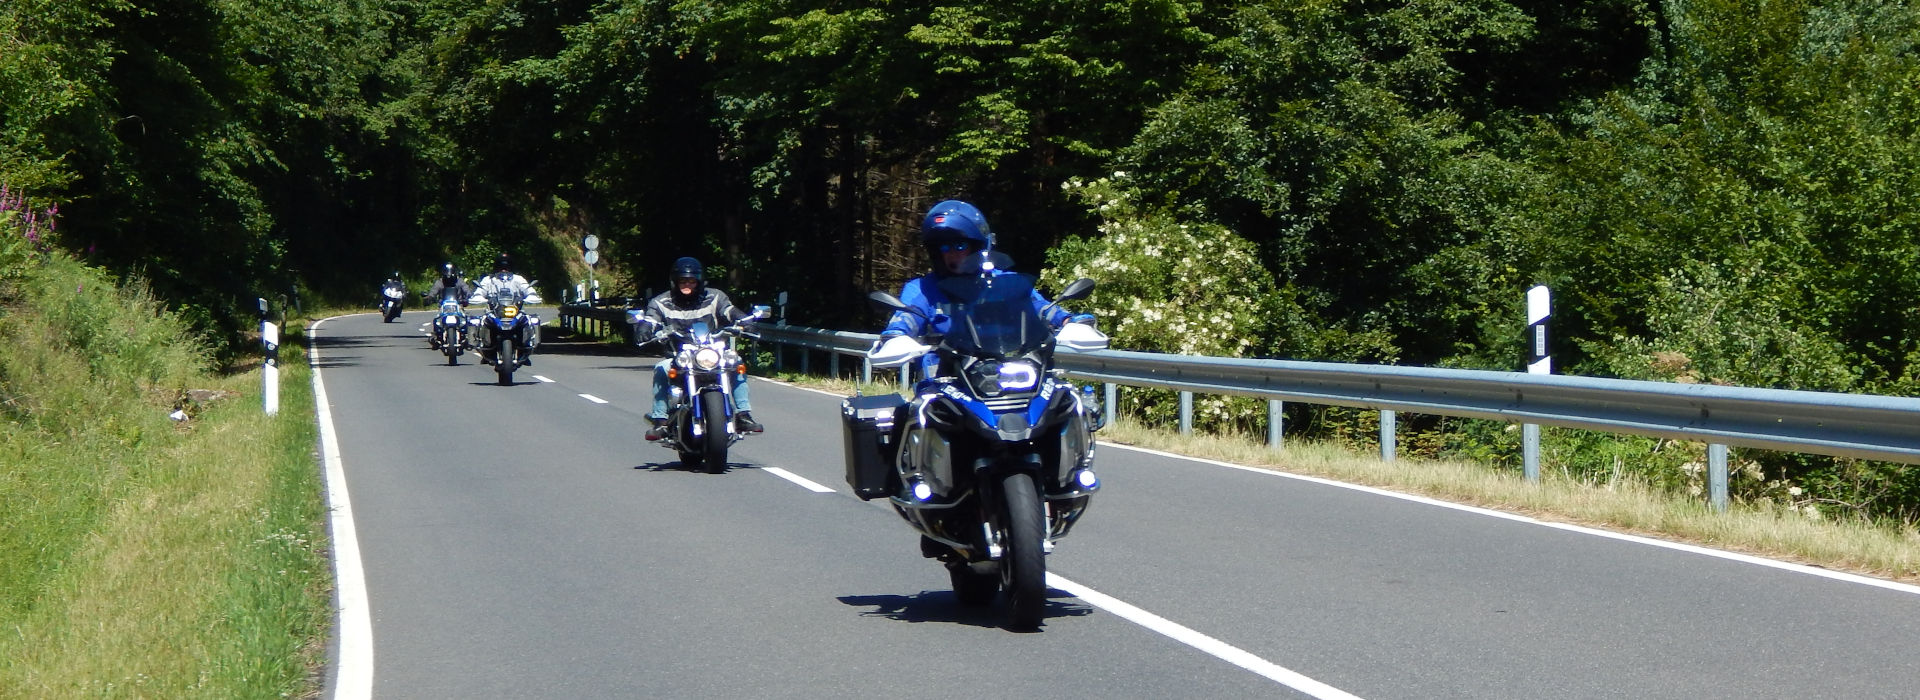 Motorrijbewijspoint Nieuw-Loosdrecht motorrijlessen